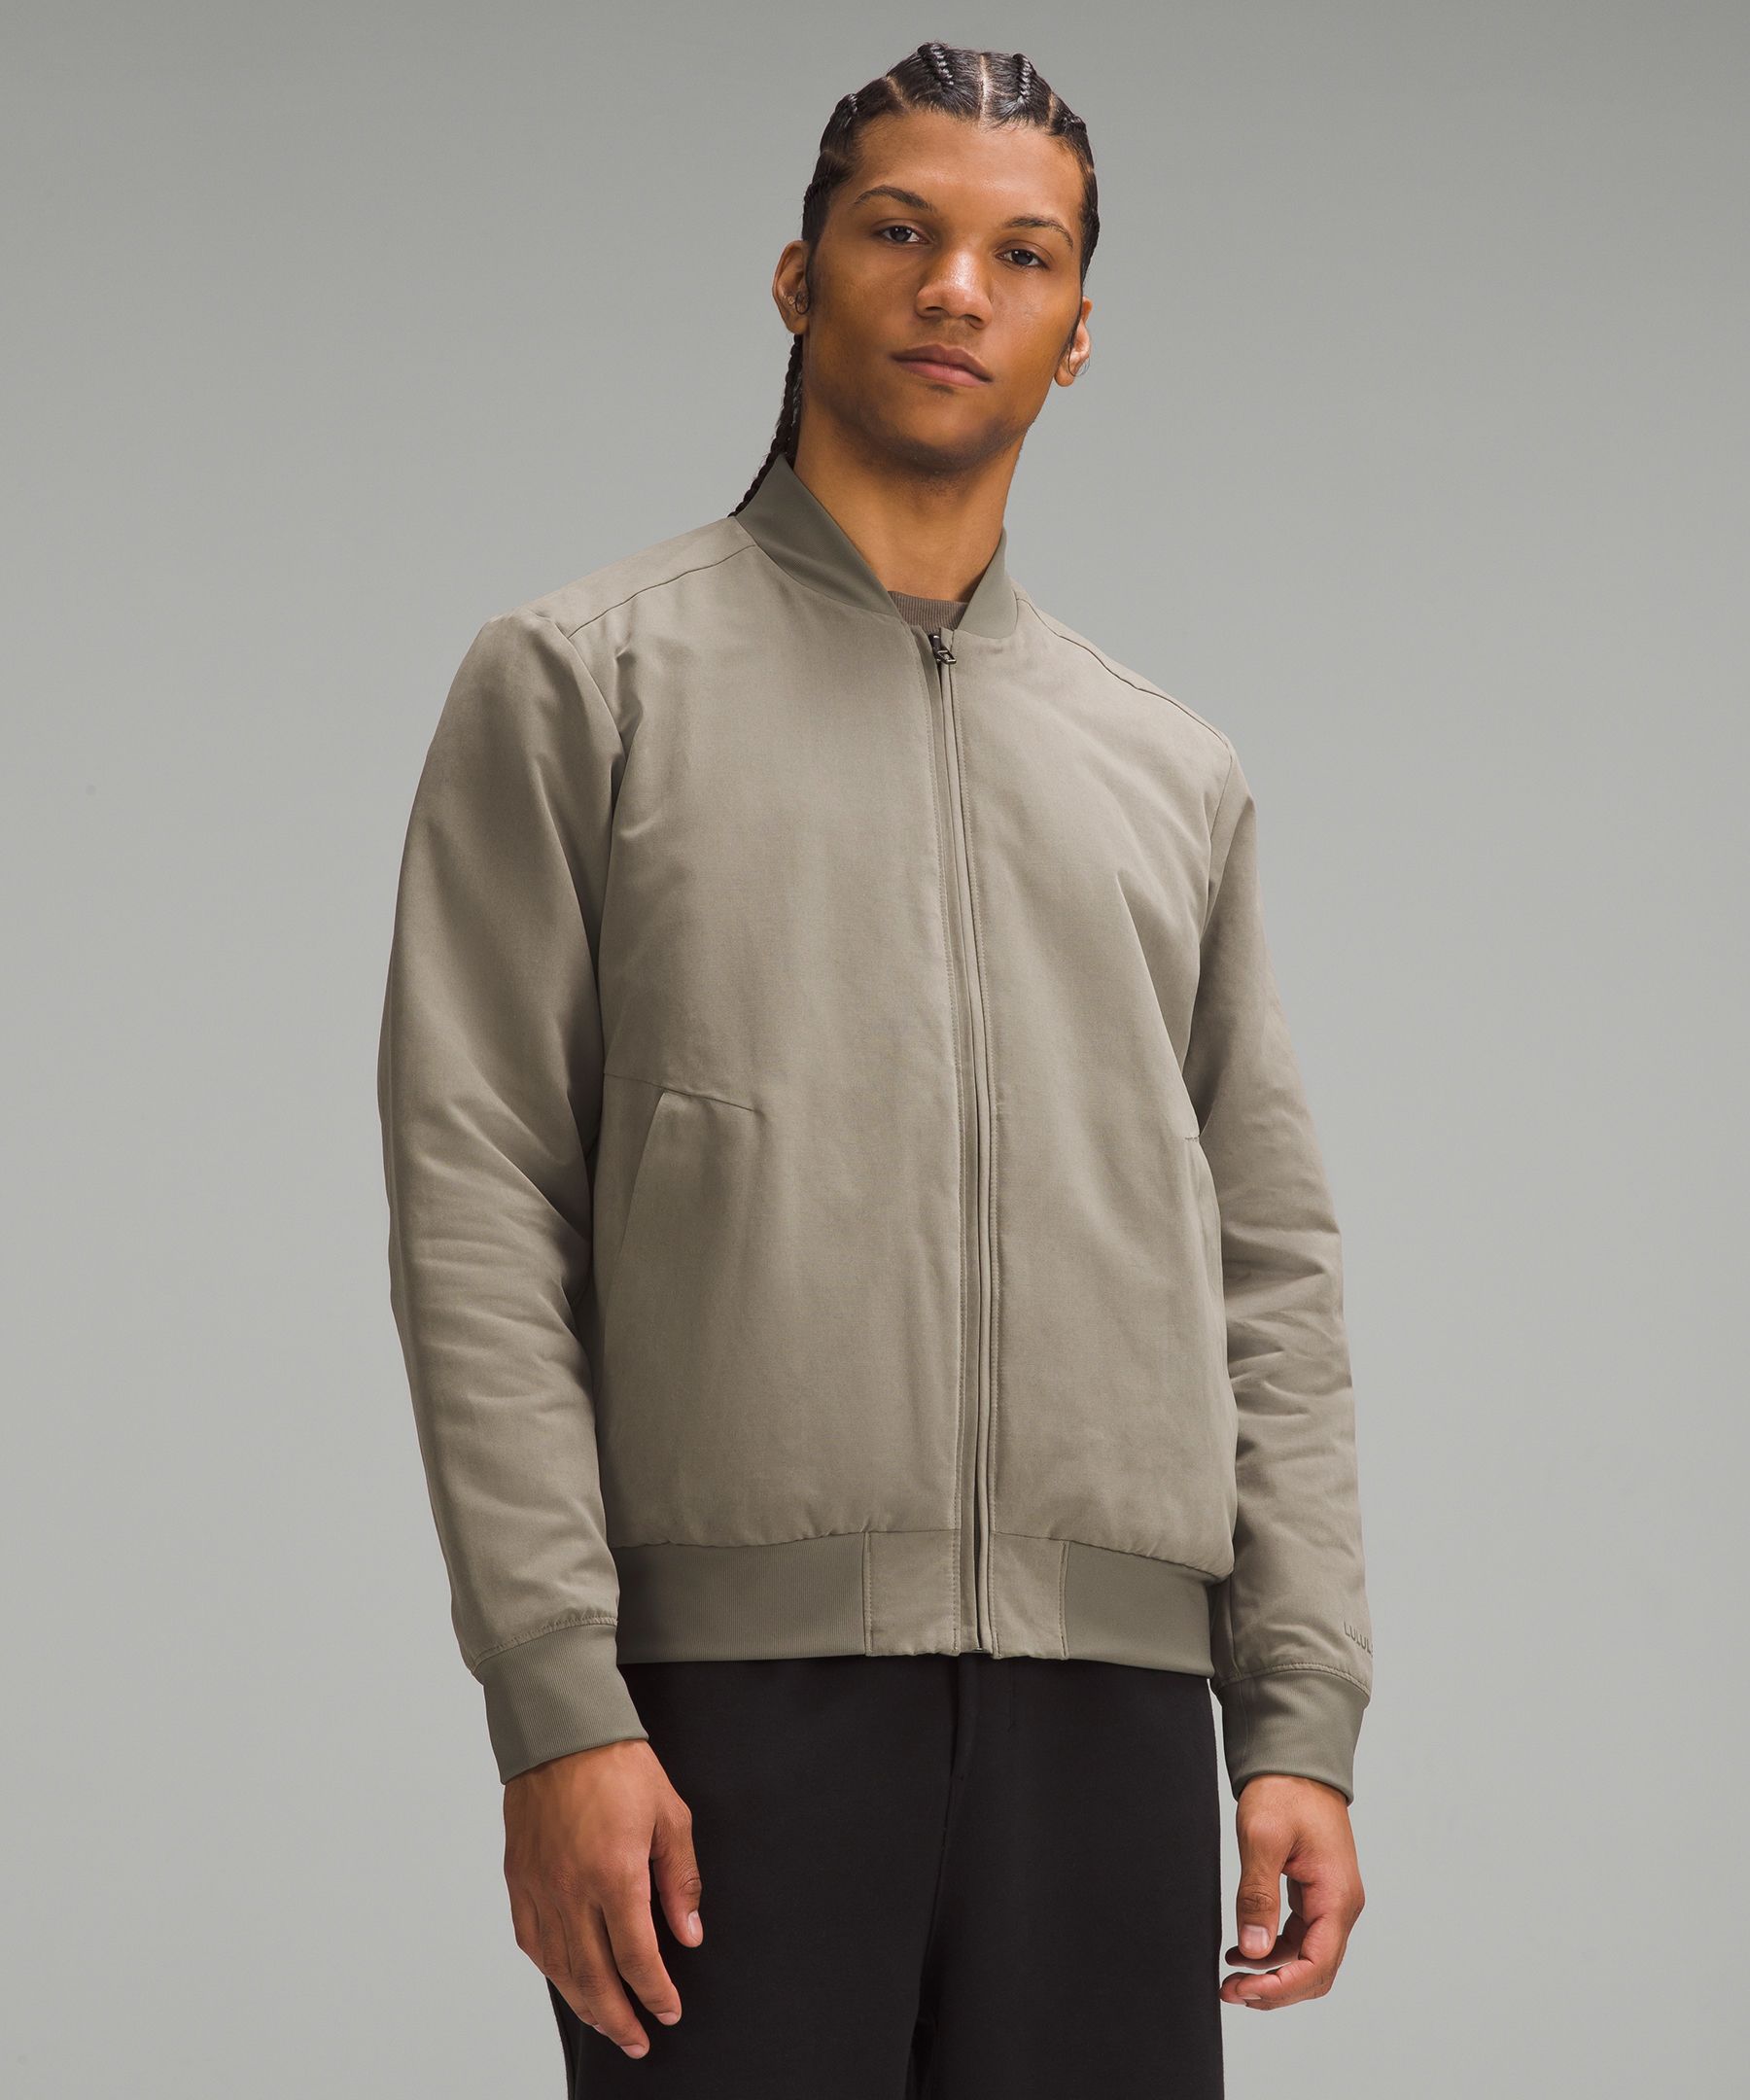 Lululemon Athletica Men's Capacity Jacket Size M Full Zip Training Grey  Black